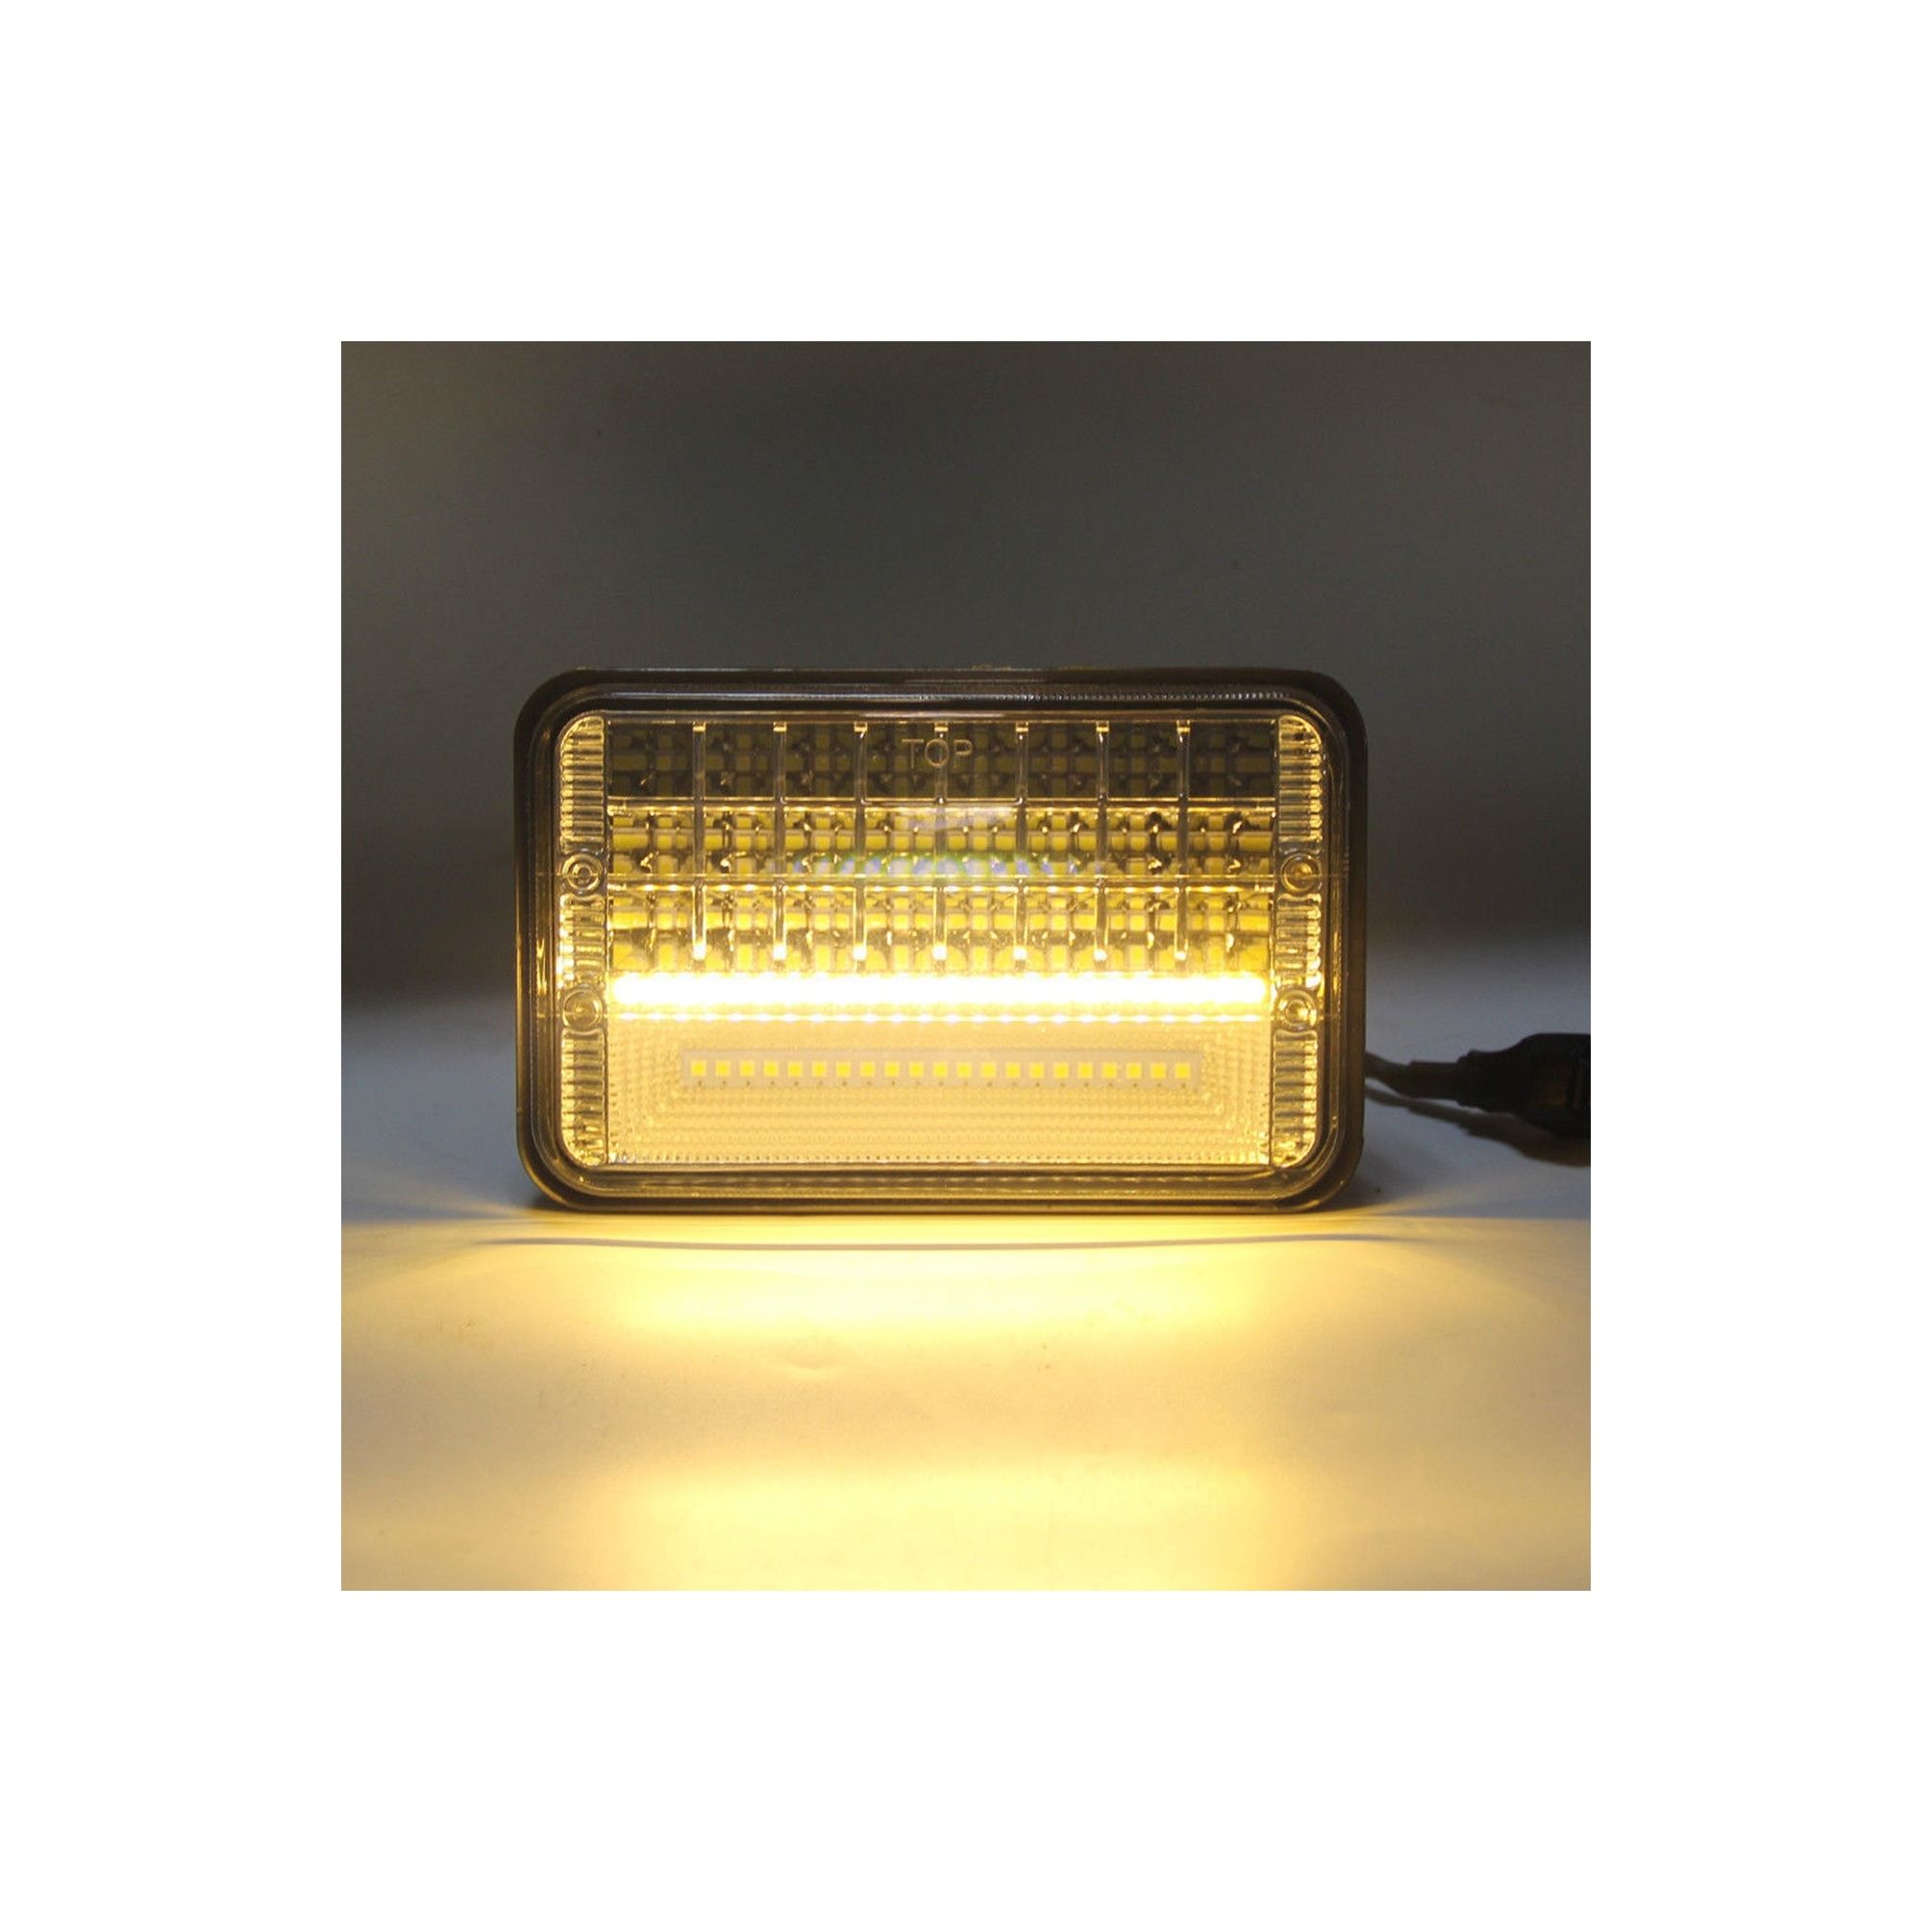 Proiector LED cu DRL 45W 2 faze 12/24V AL-010720-7